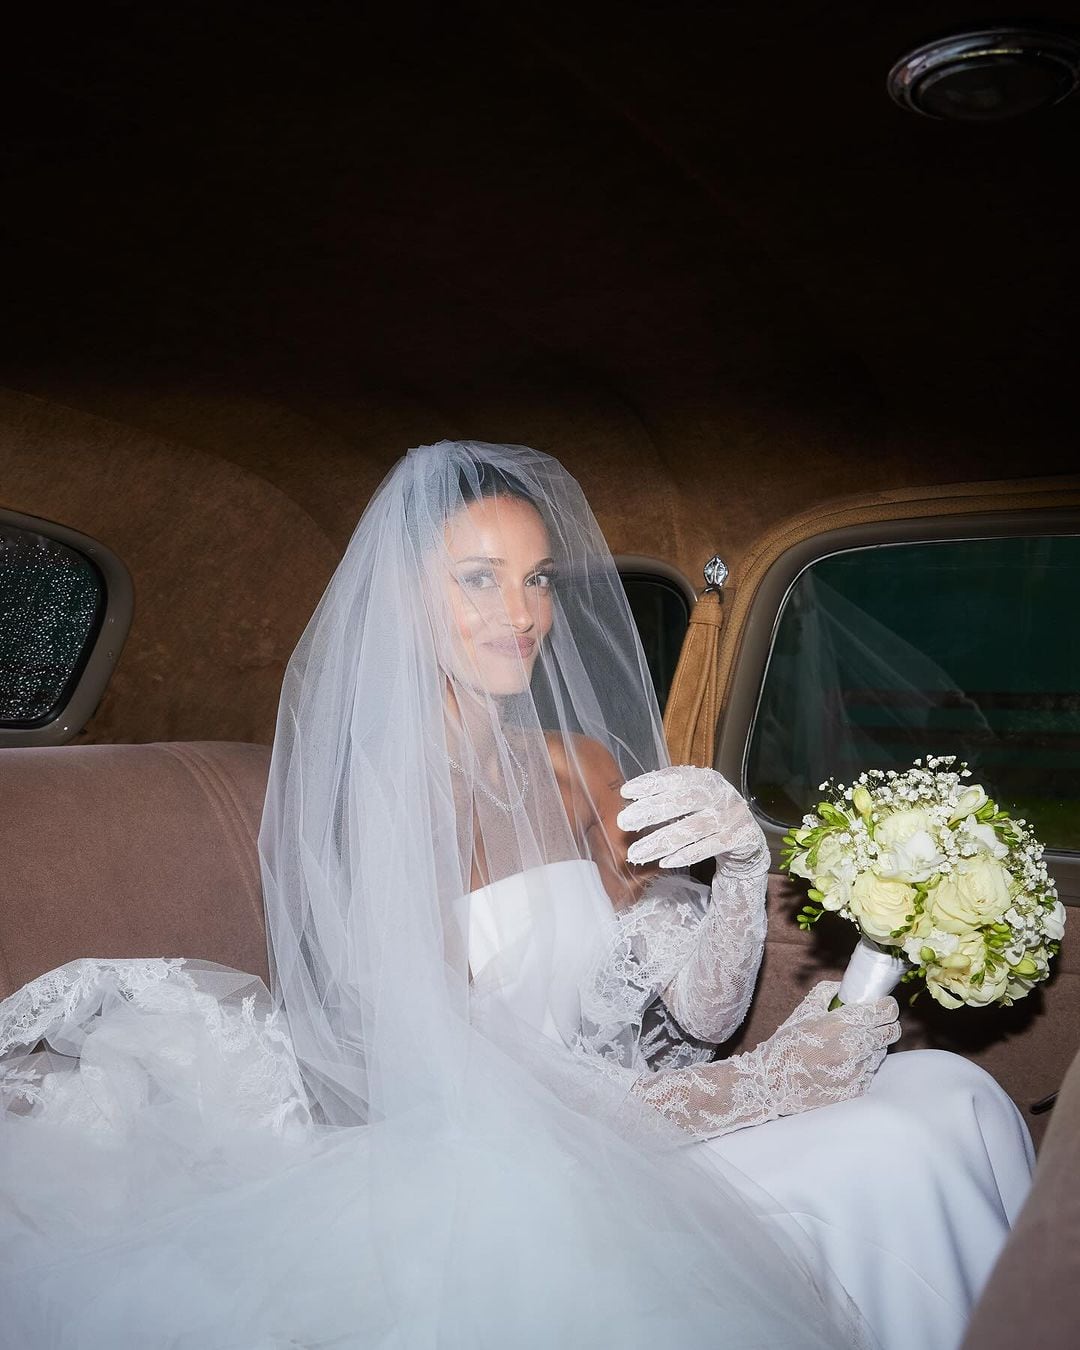 Casamiento de Oriana Sabatini y Paulo Dybala: la novia llegando en auto para caminar al altar